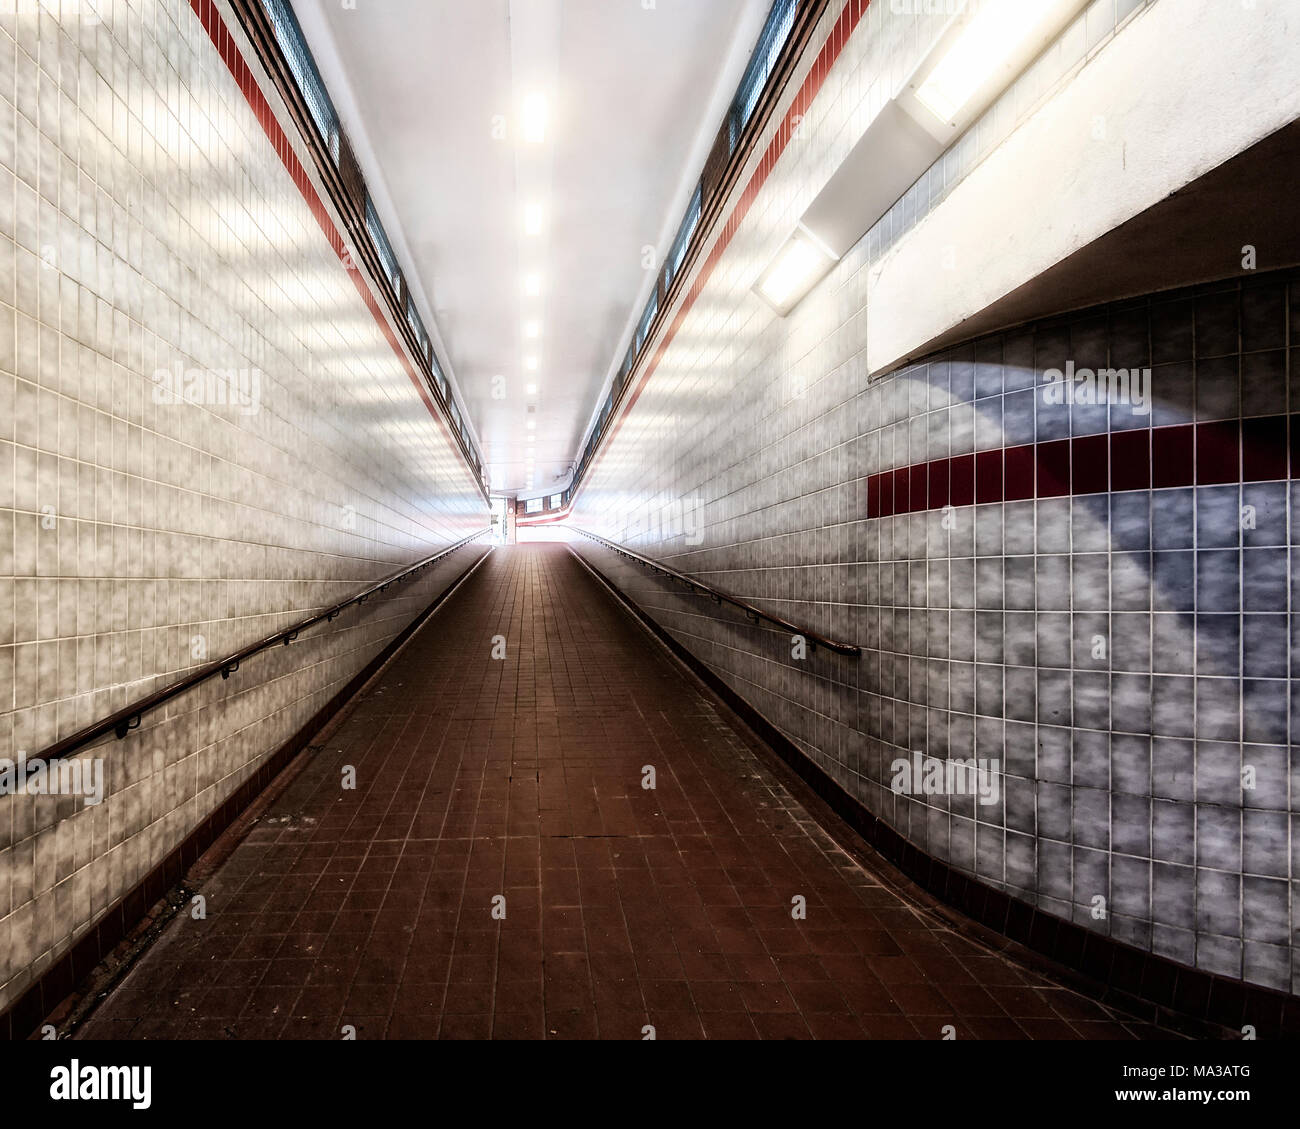 London Underground Tube Station: Woodford Stock Photo